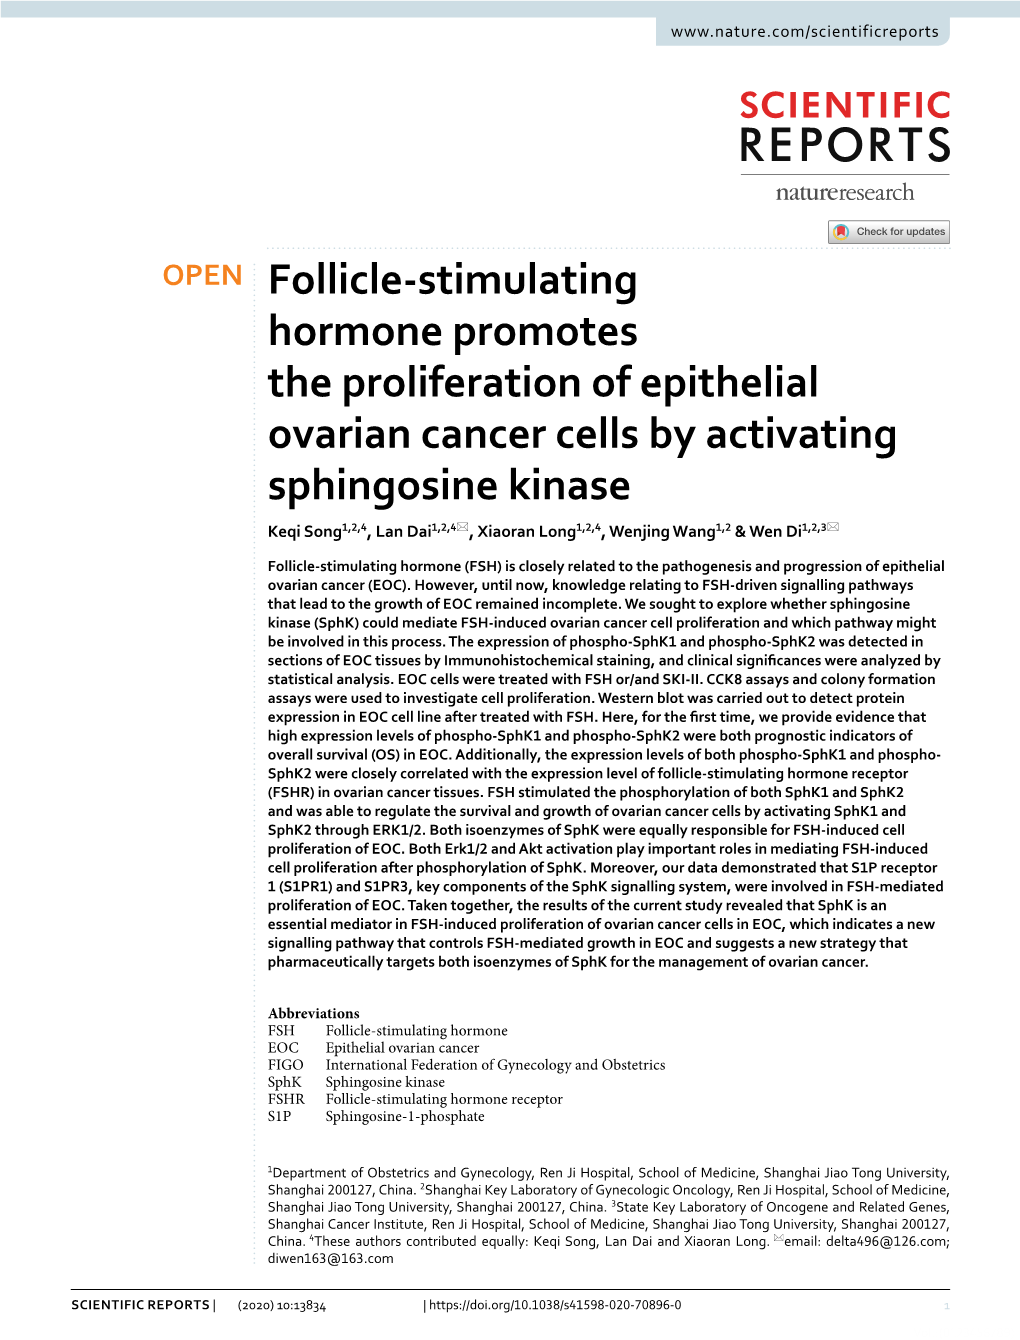 Follicle-Stimulating Hormone Promotes the Proliferation of Epithelial